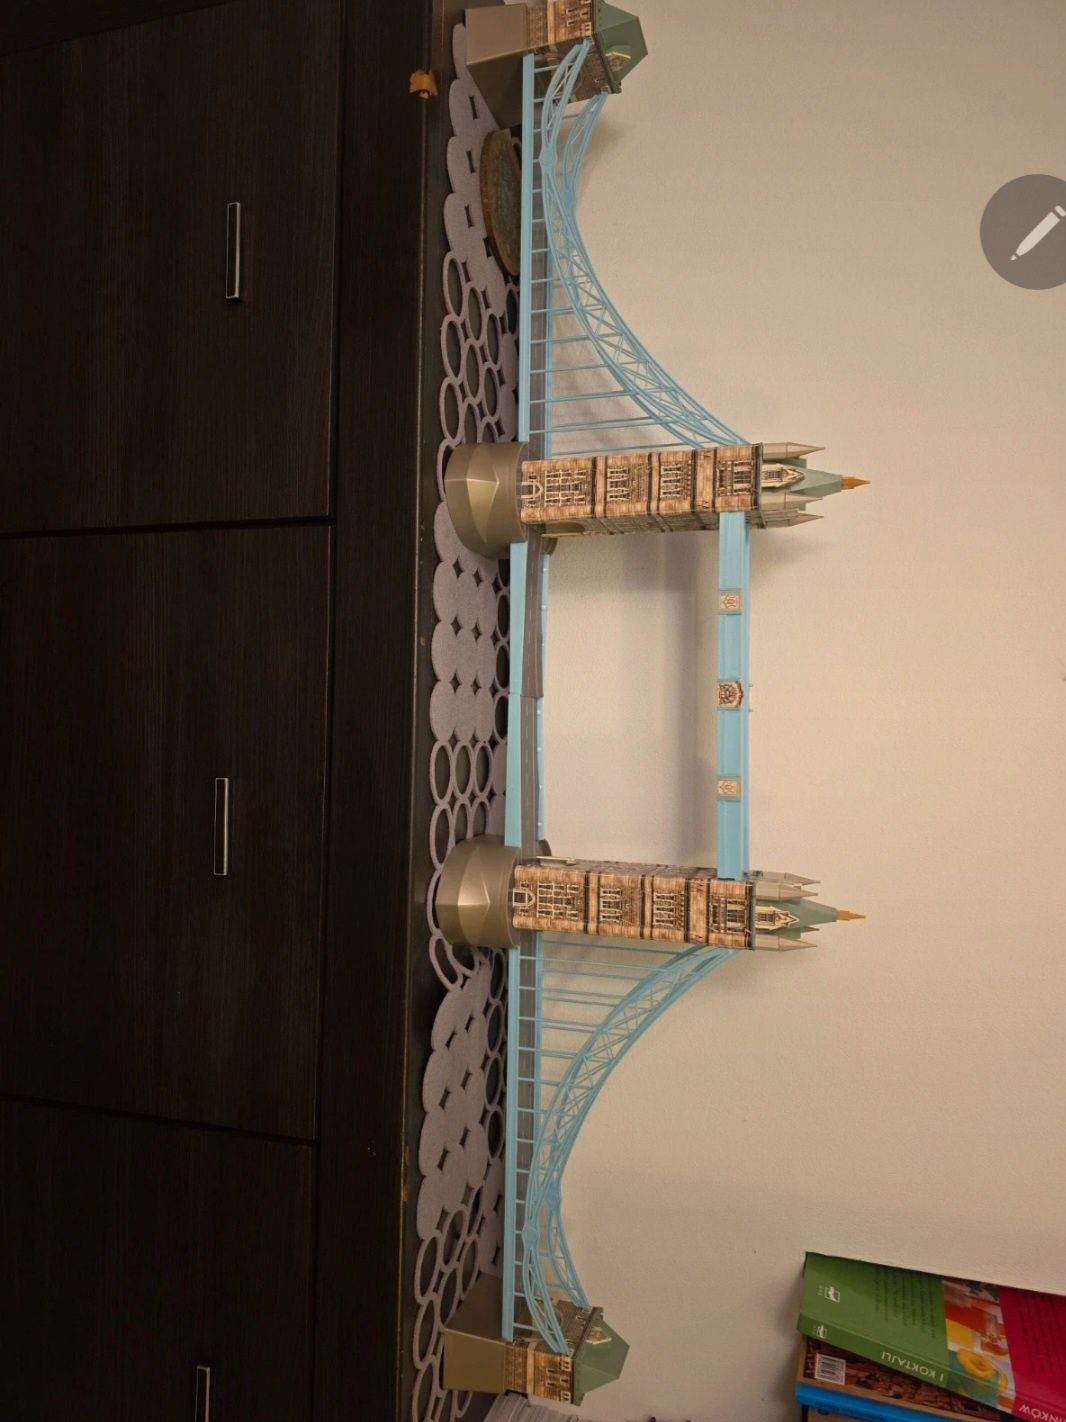 Tower Bridge most - puzzle 3D